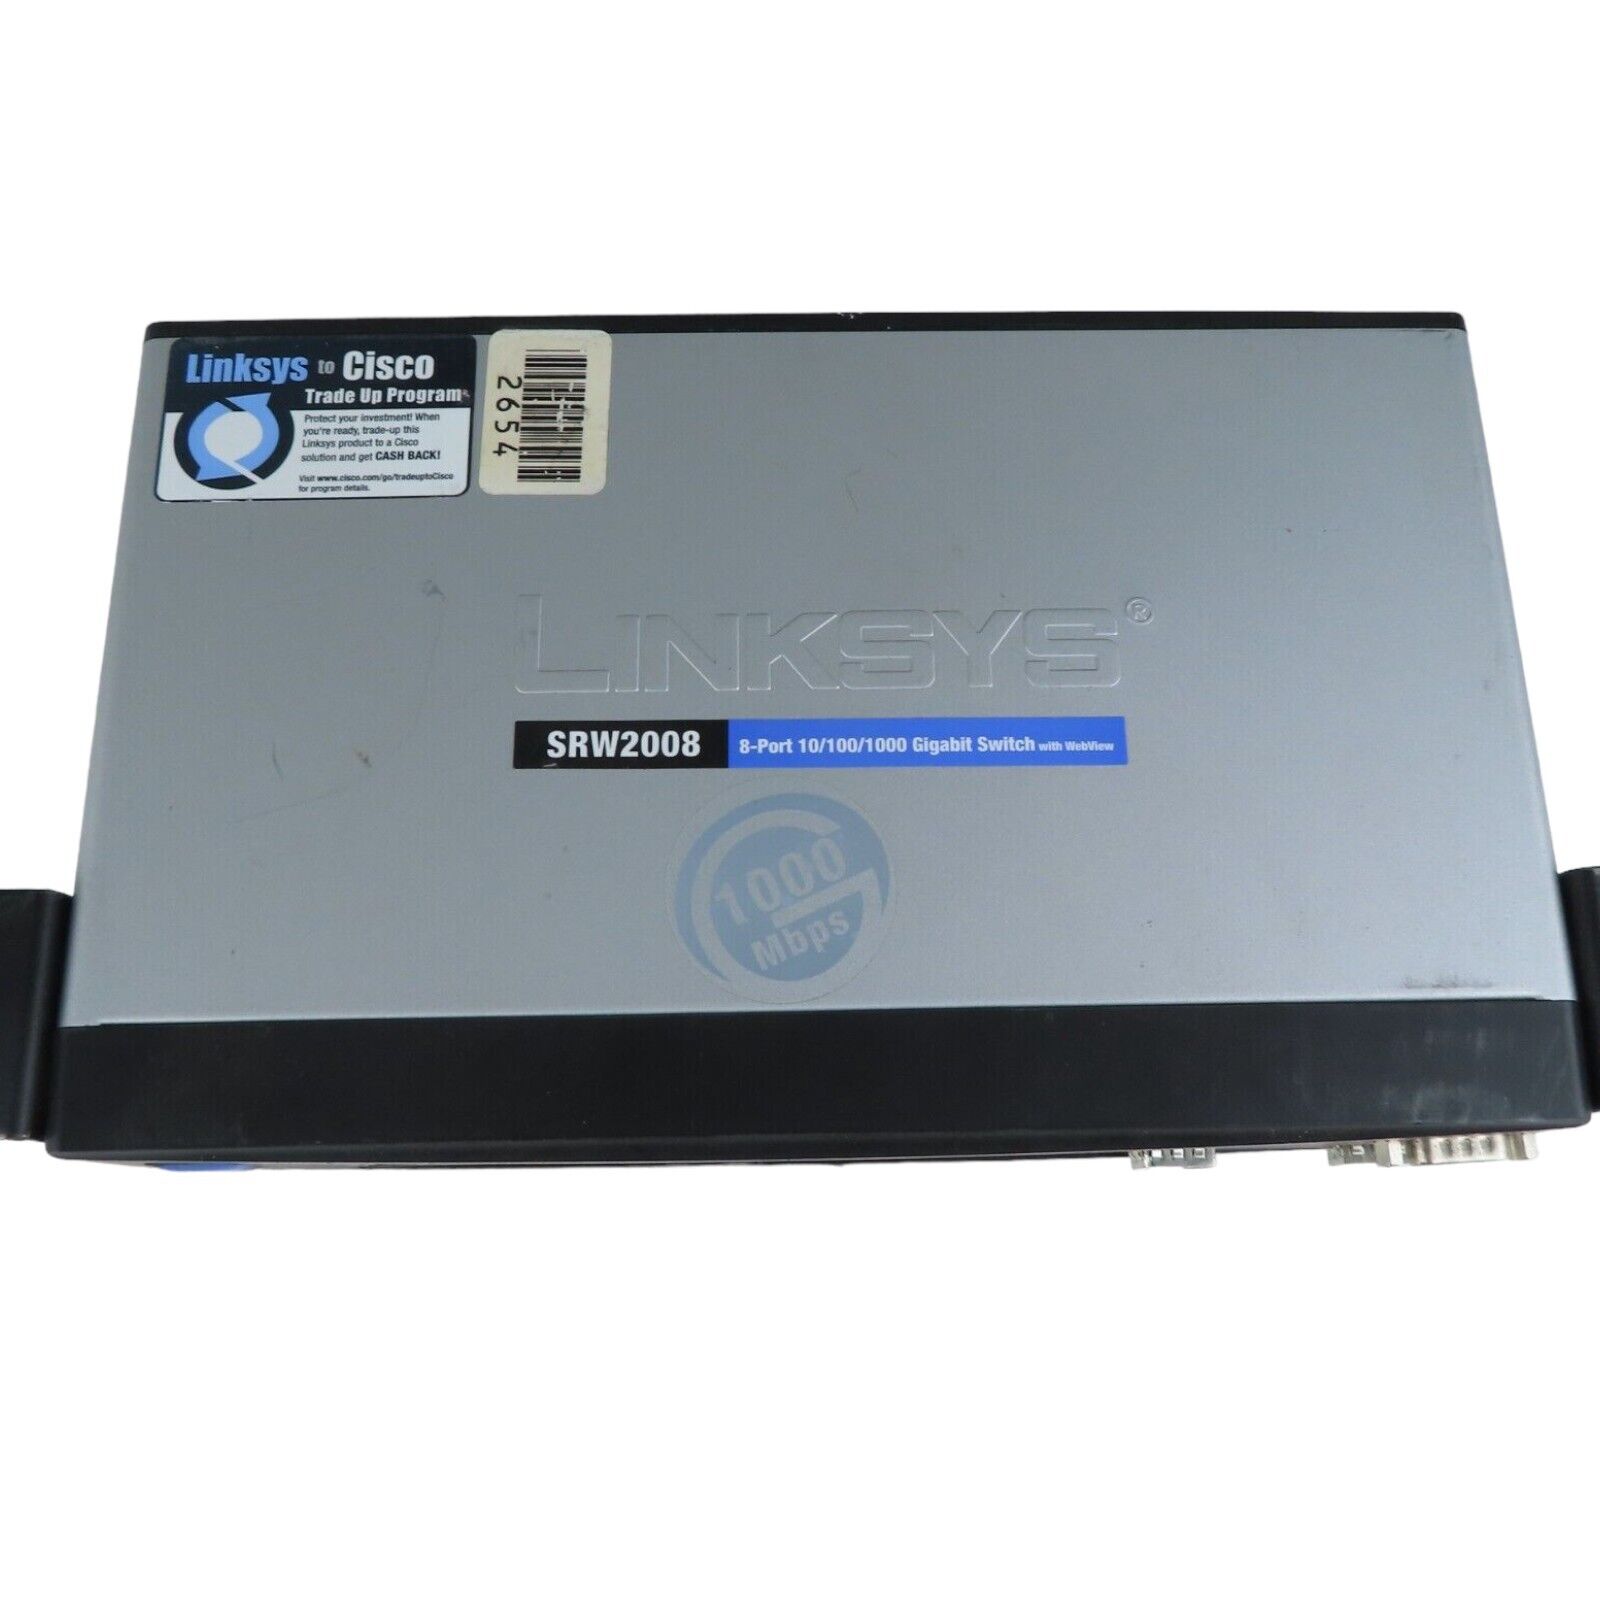 Cisco Linksys SRW2008 8-Port 10/100/1000 Managed Gigabit Switch